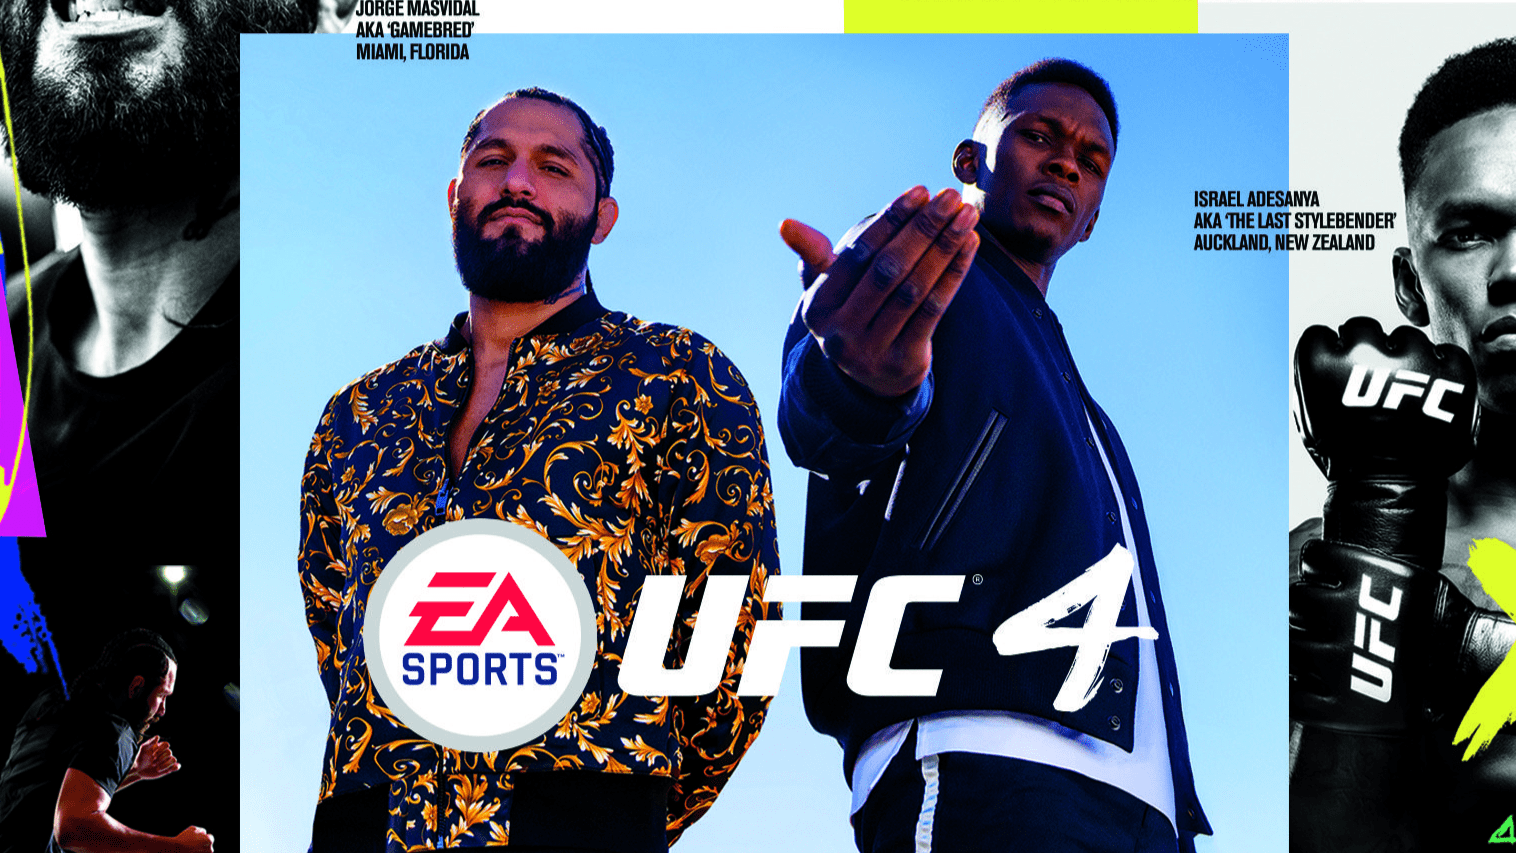 PS4 EA Sports UFC 4